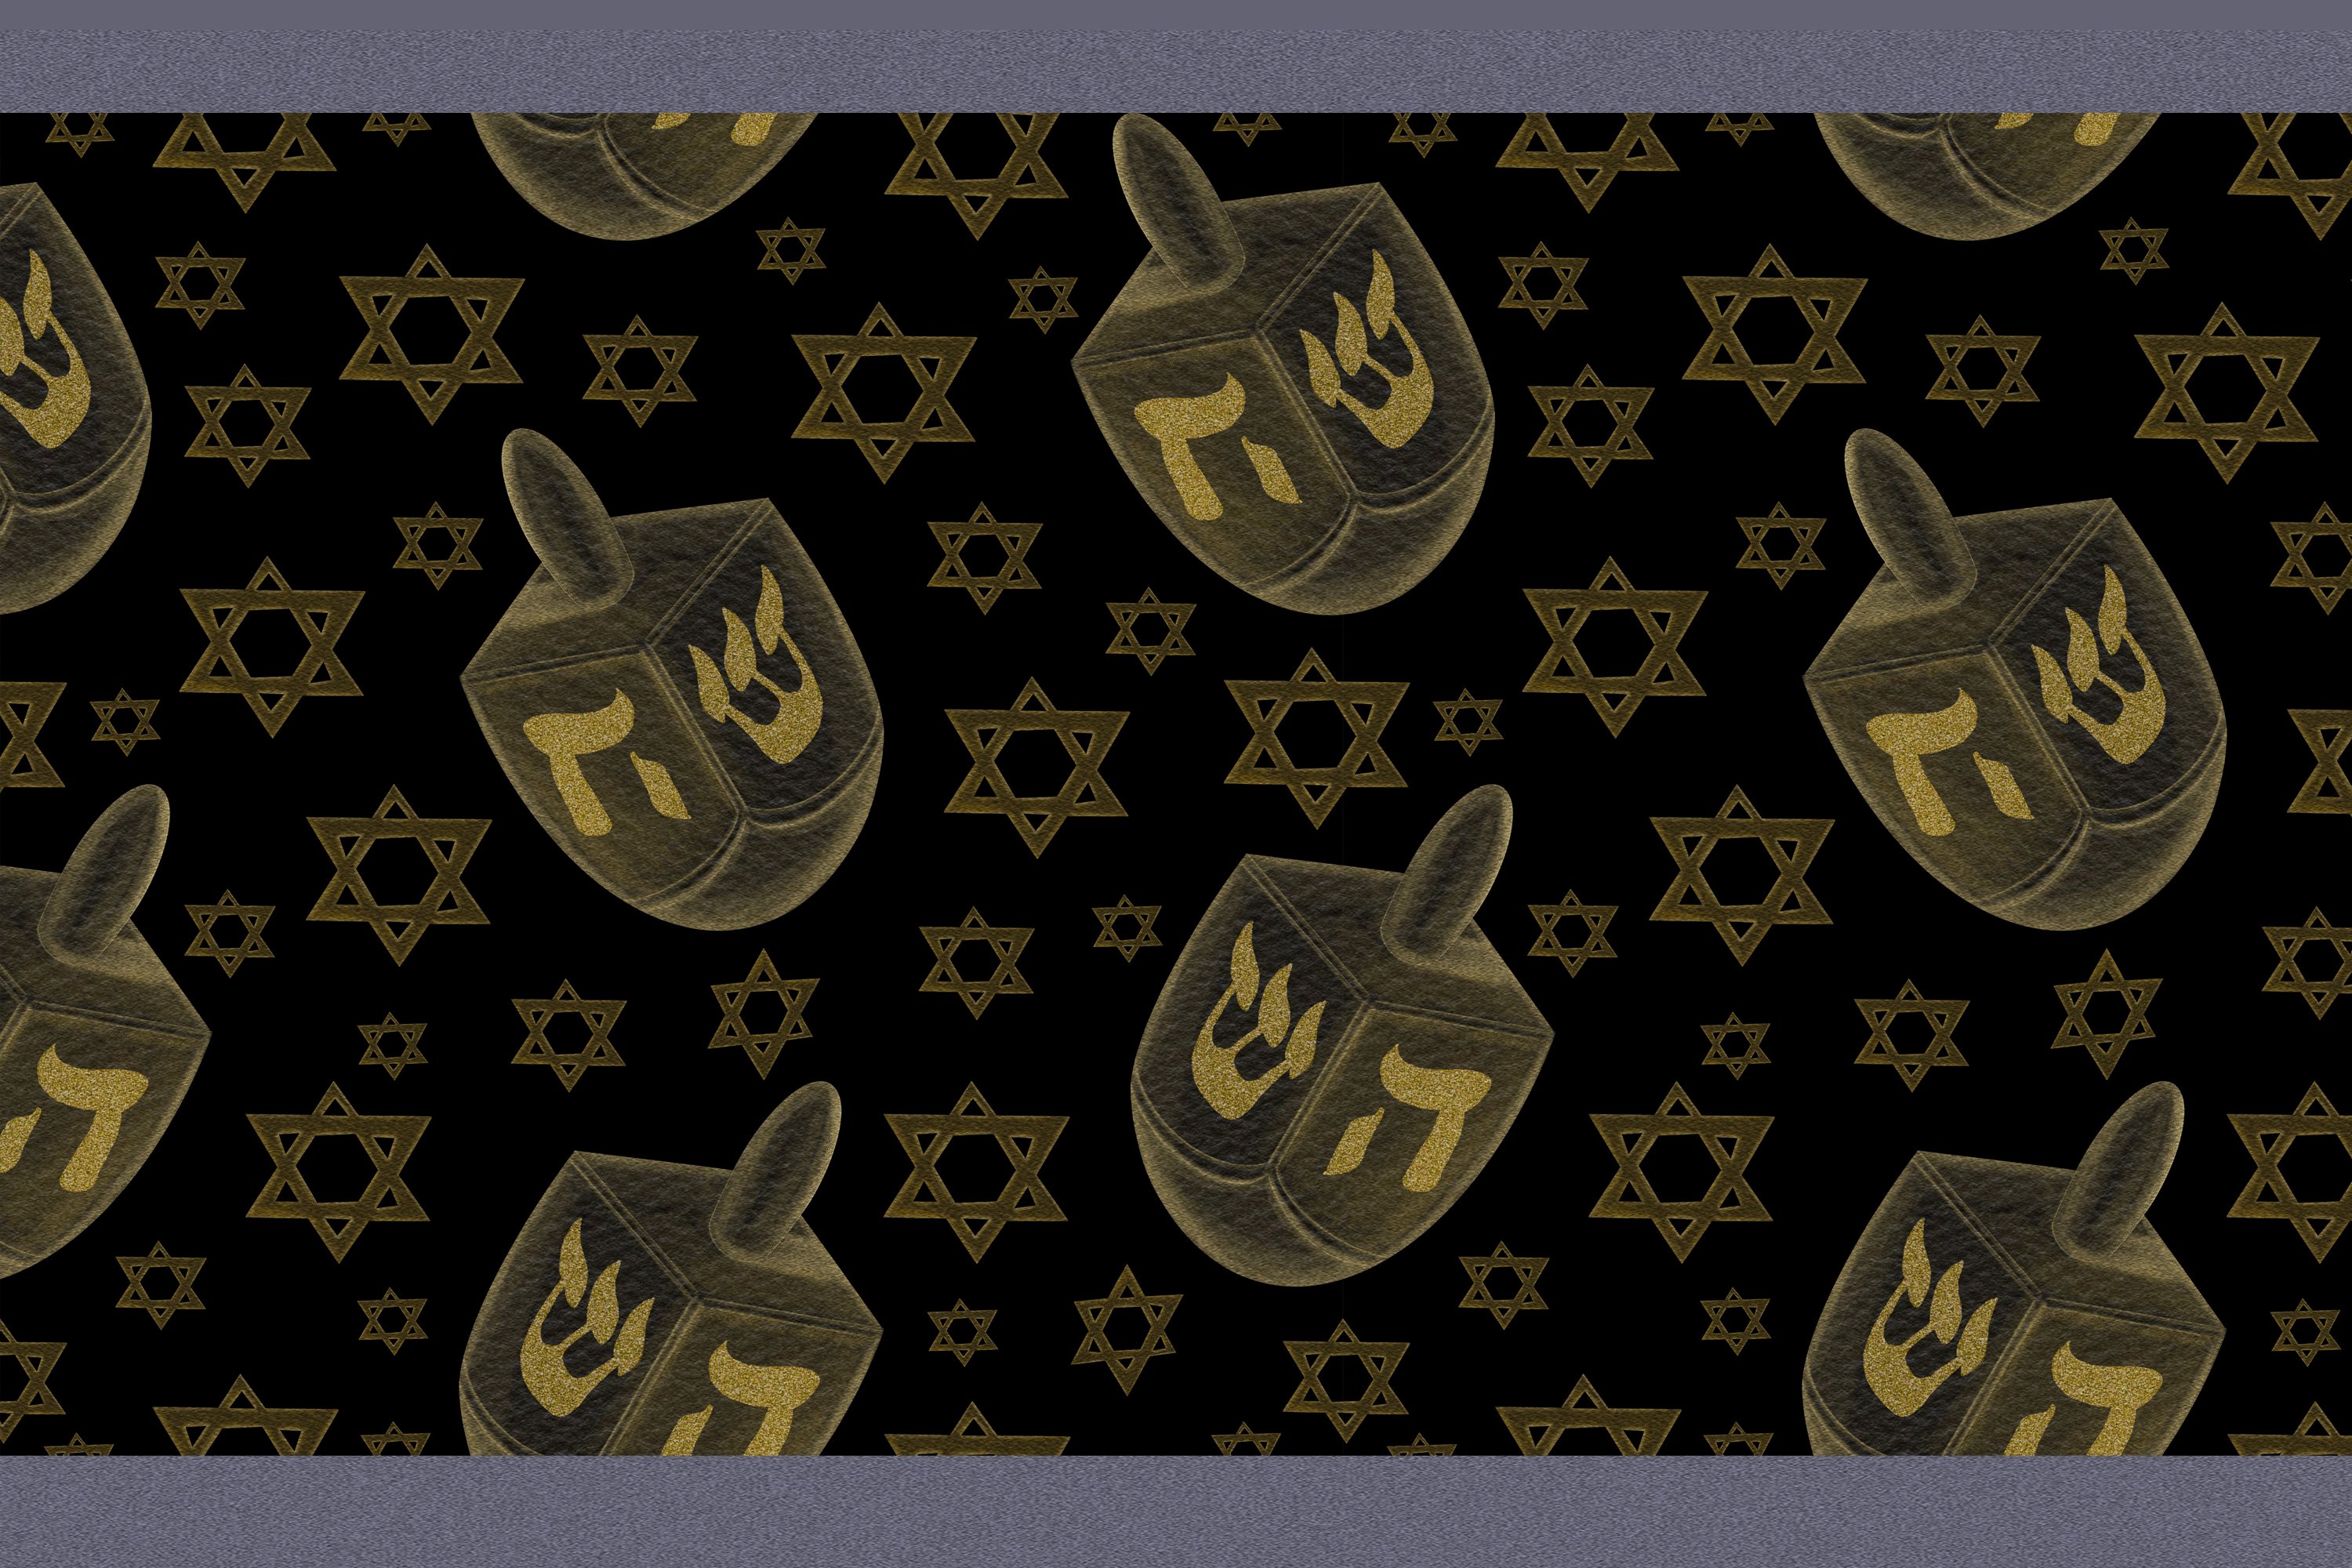 Golden symbols on a black background.